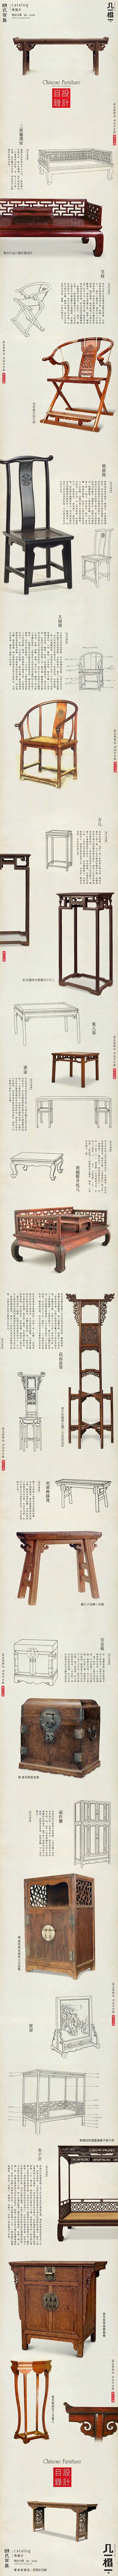 明式家具 | 视觉中国